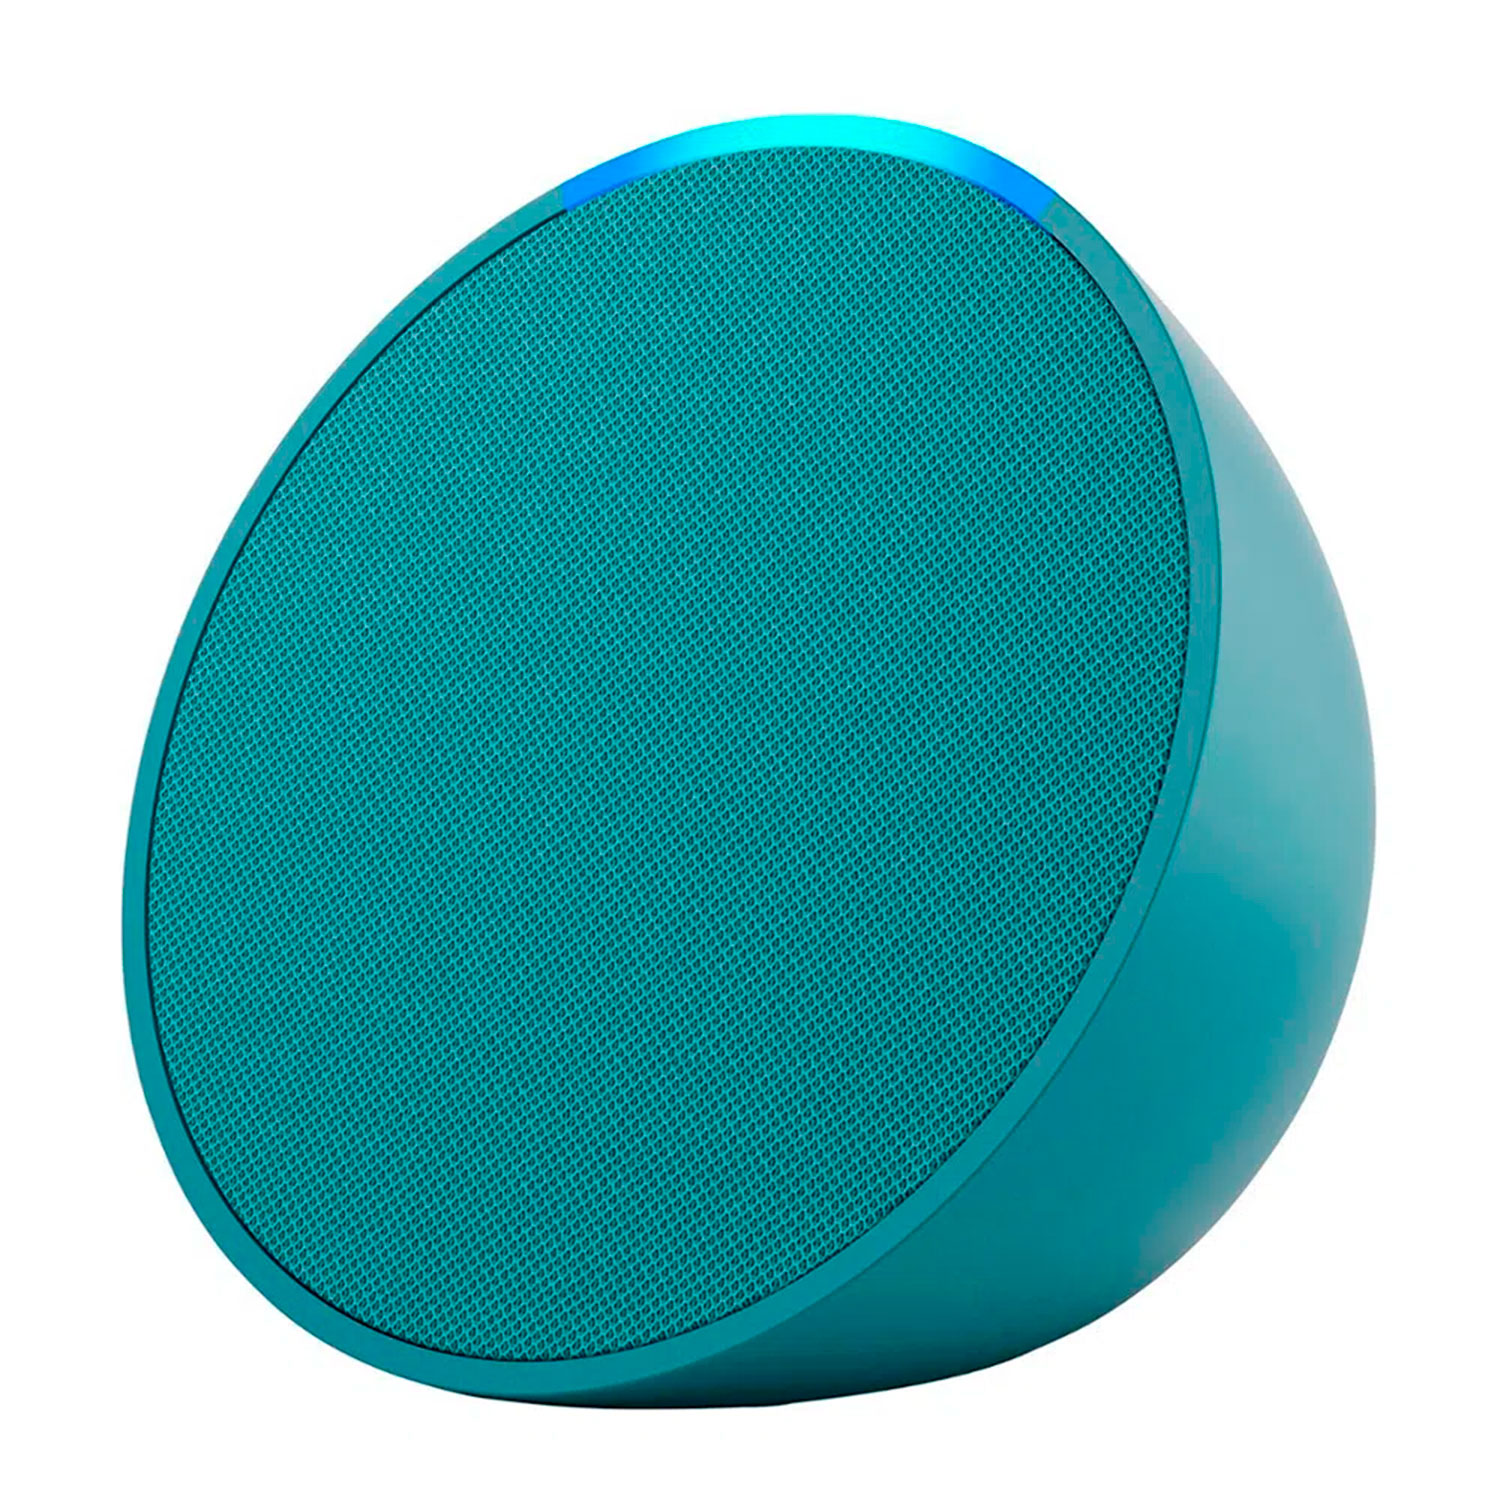 Novo Echo Pop Smart Speaker - A Mini Caixa de Som Inteligente Com Alexa 